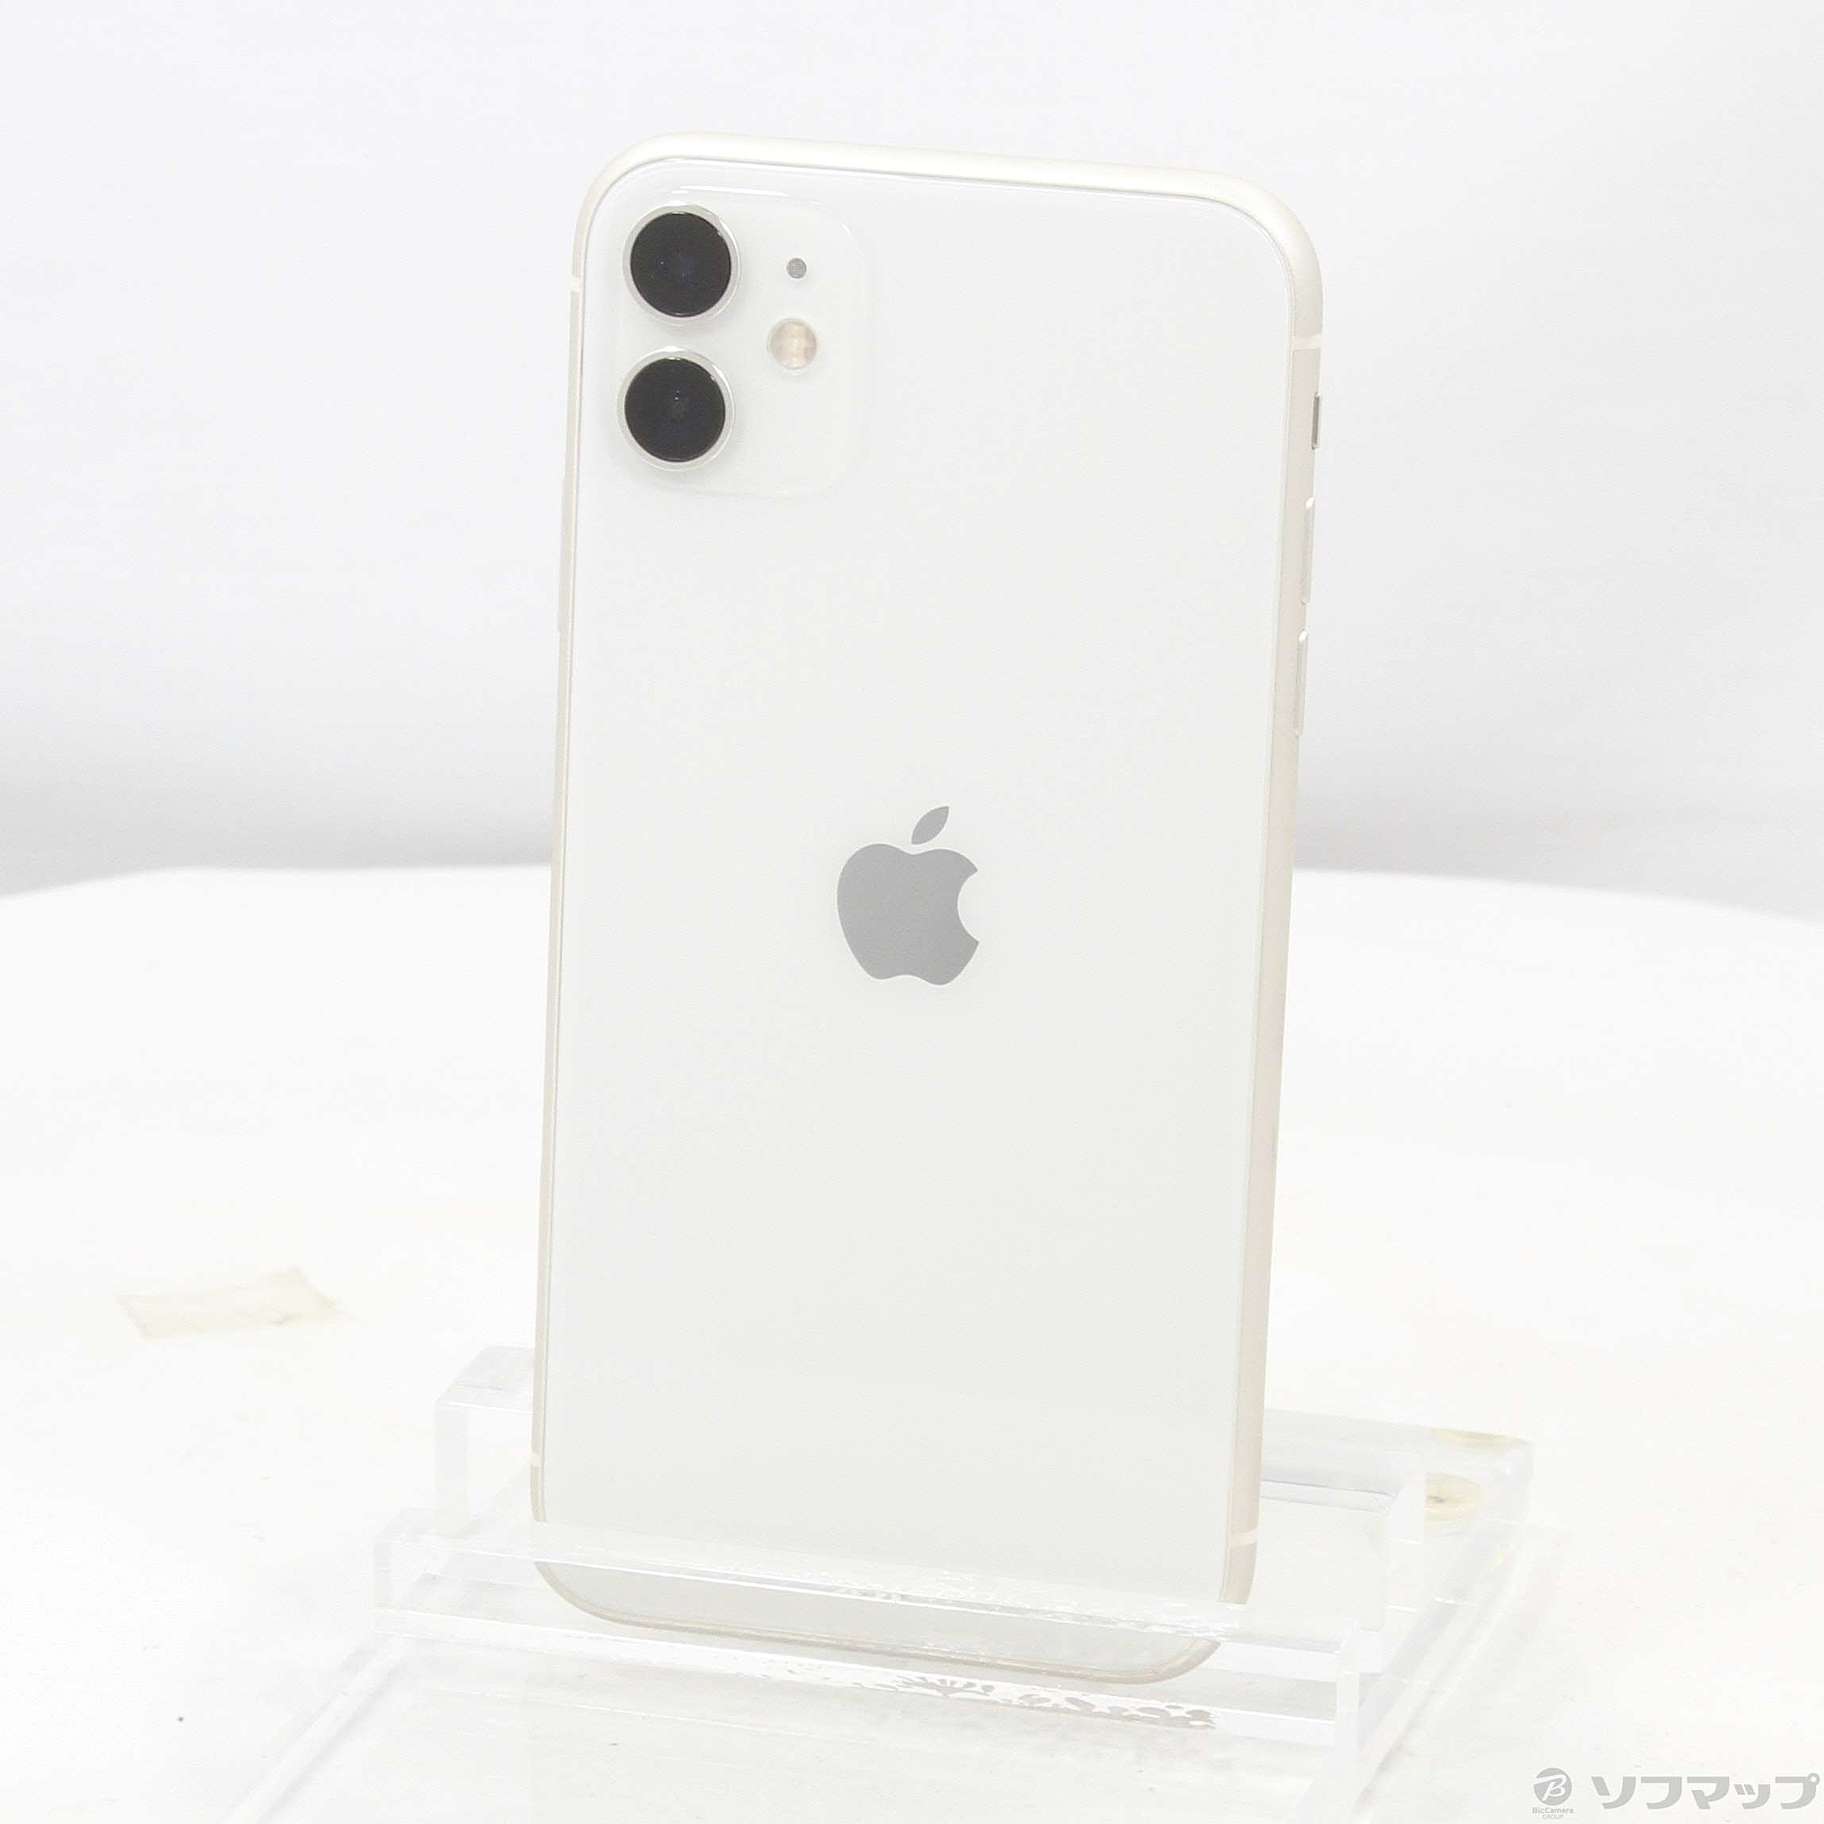 9,999円iPhone11 ホワイト 64GB